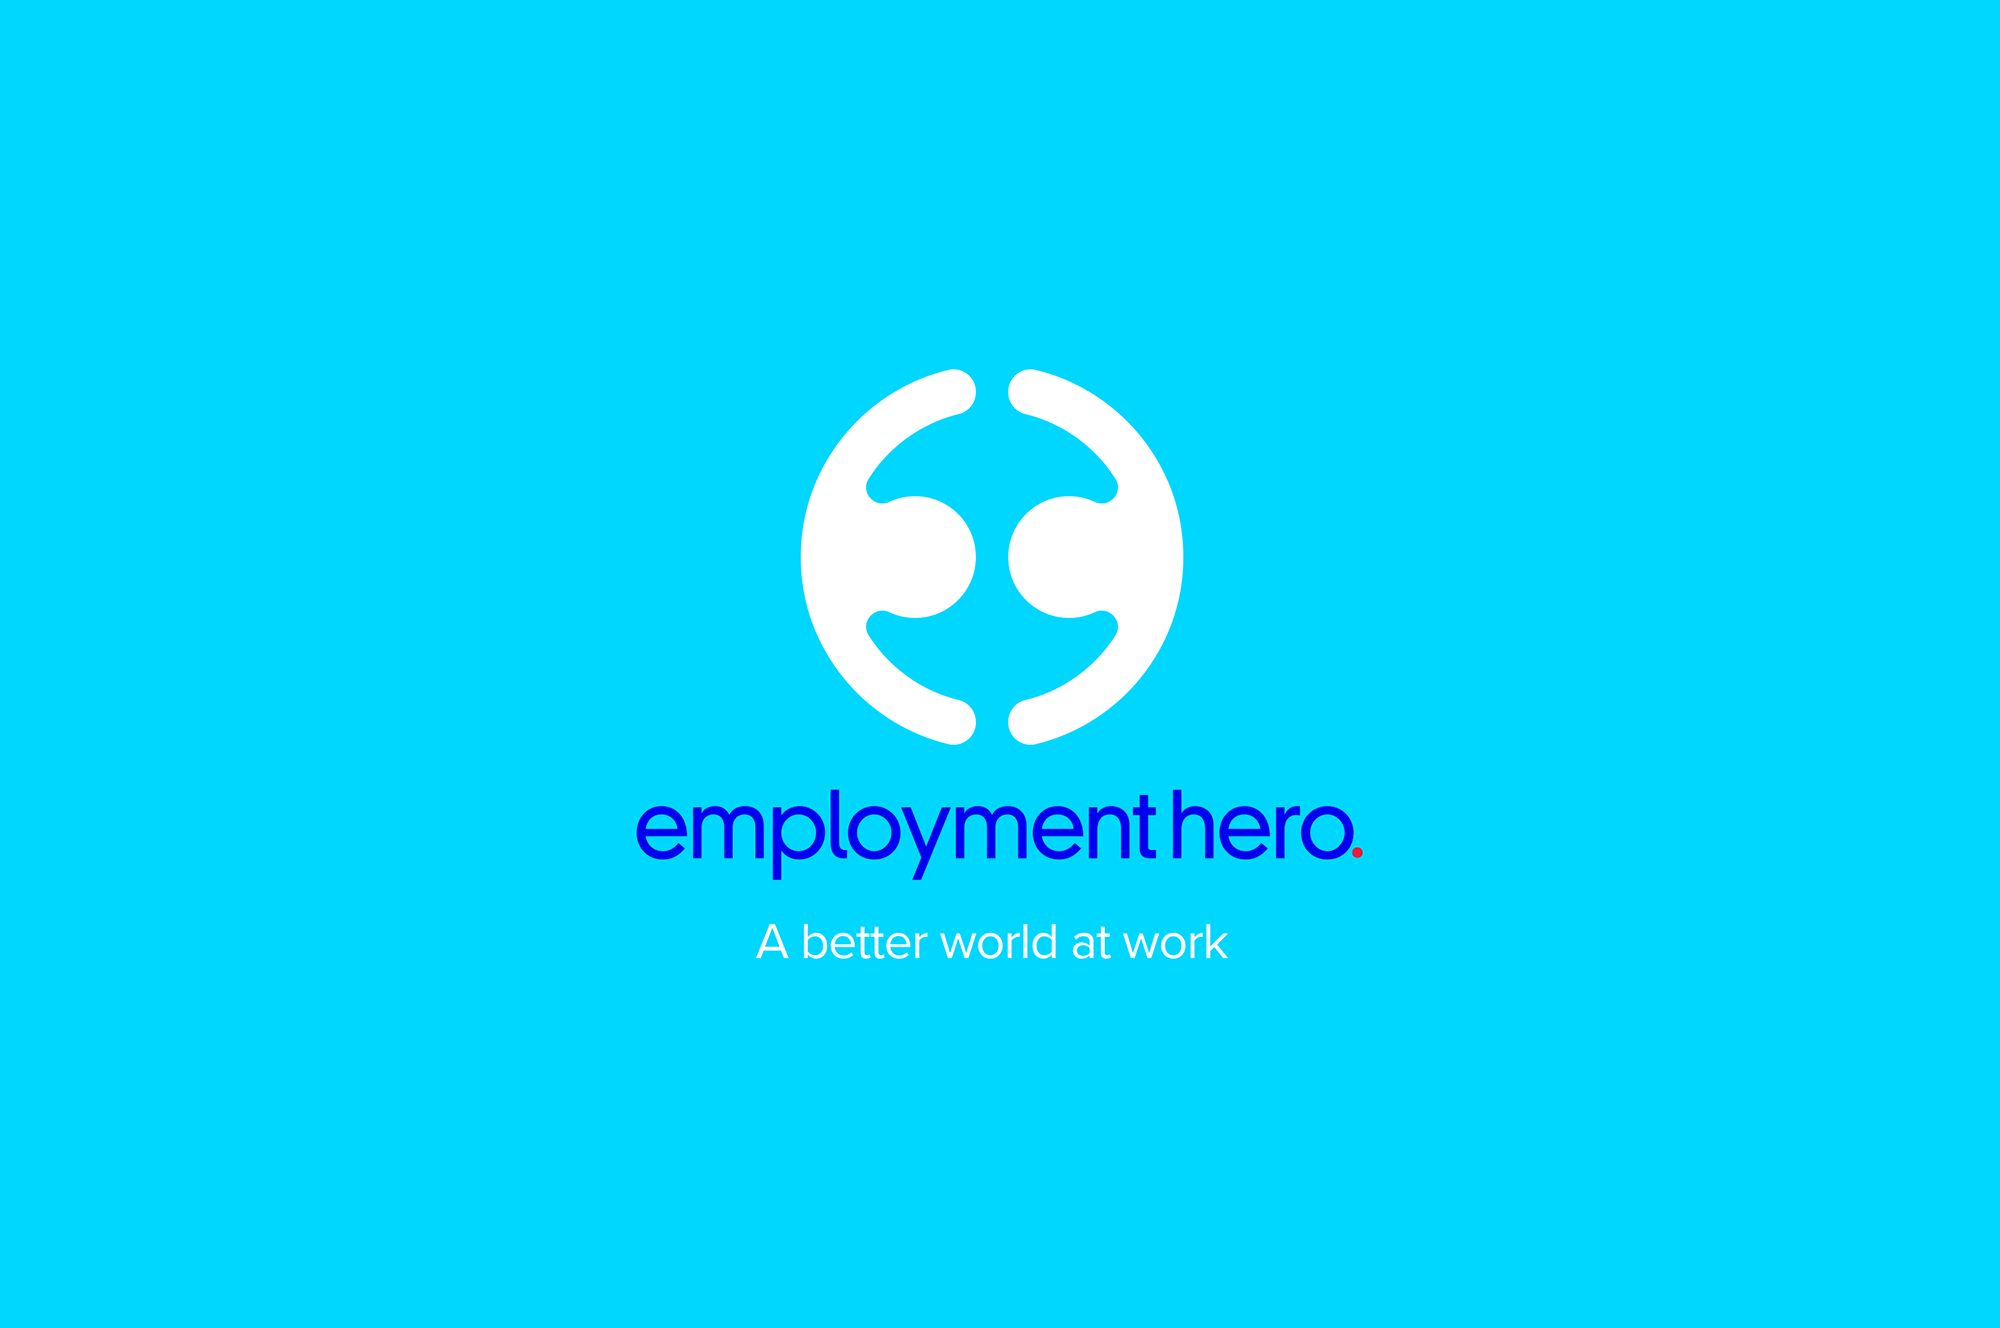 Zero To Employment Hero: HR Unicorn Raises $167M To Become Australia’s Biggest Export